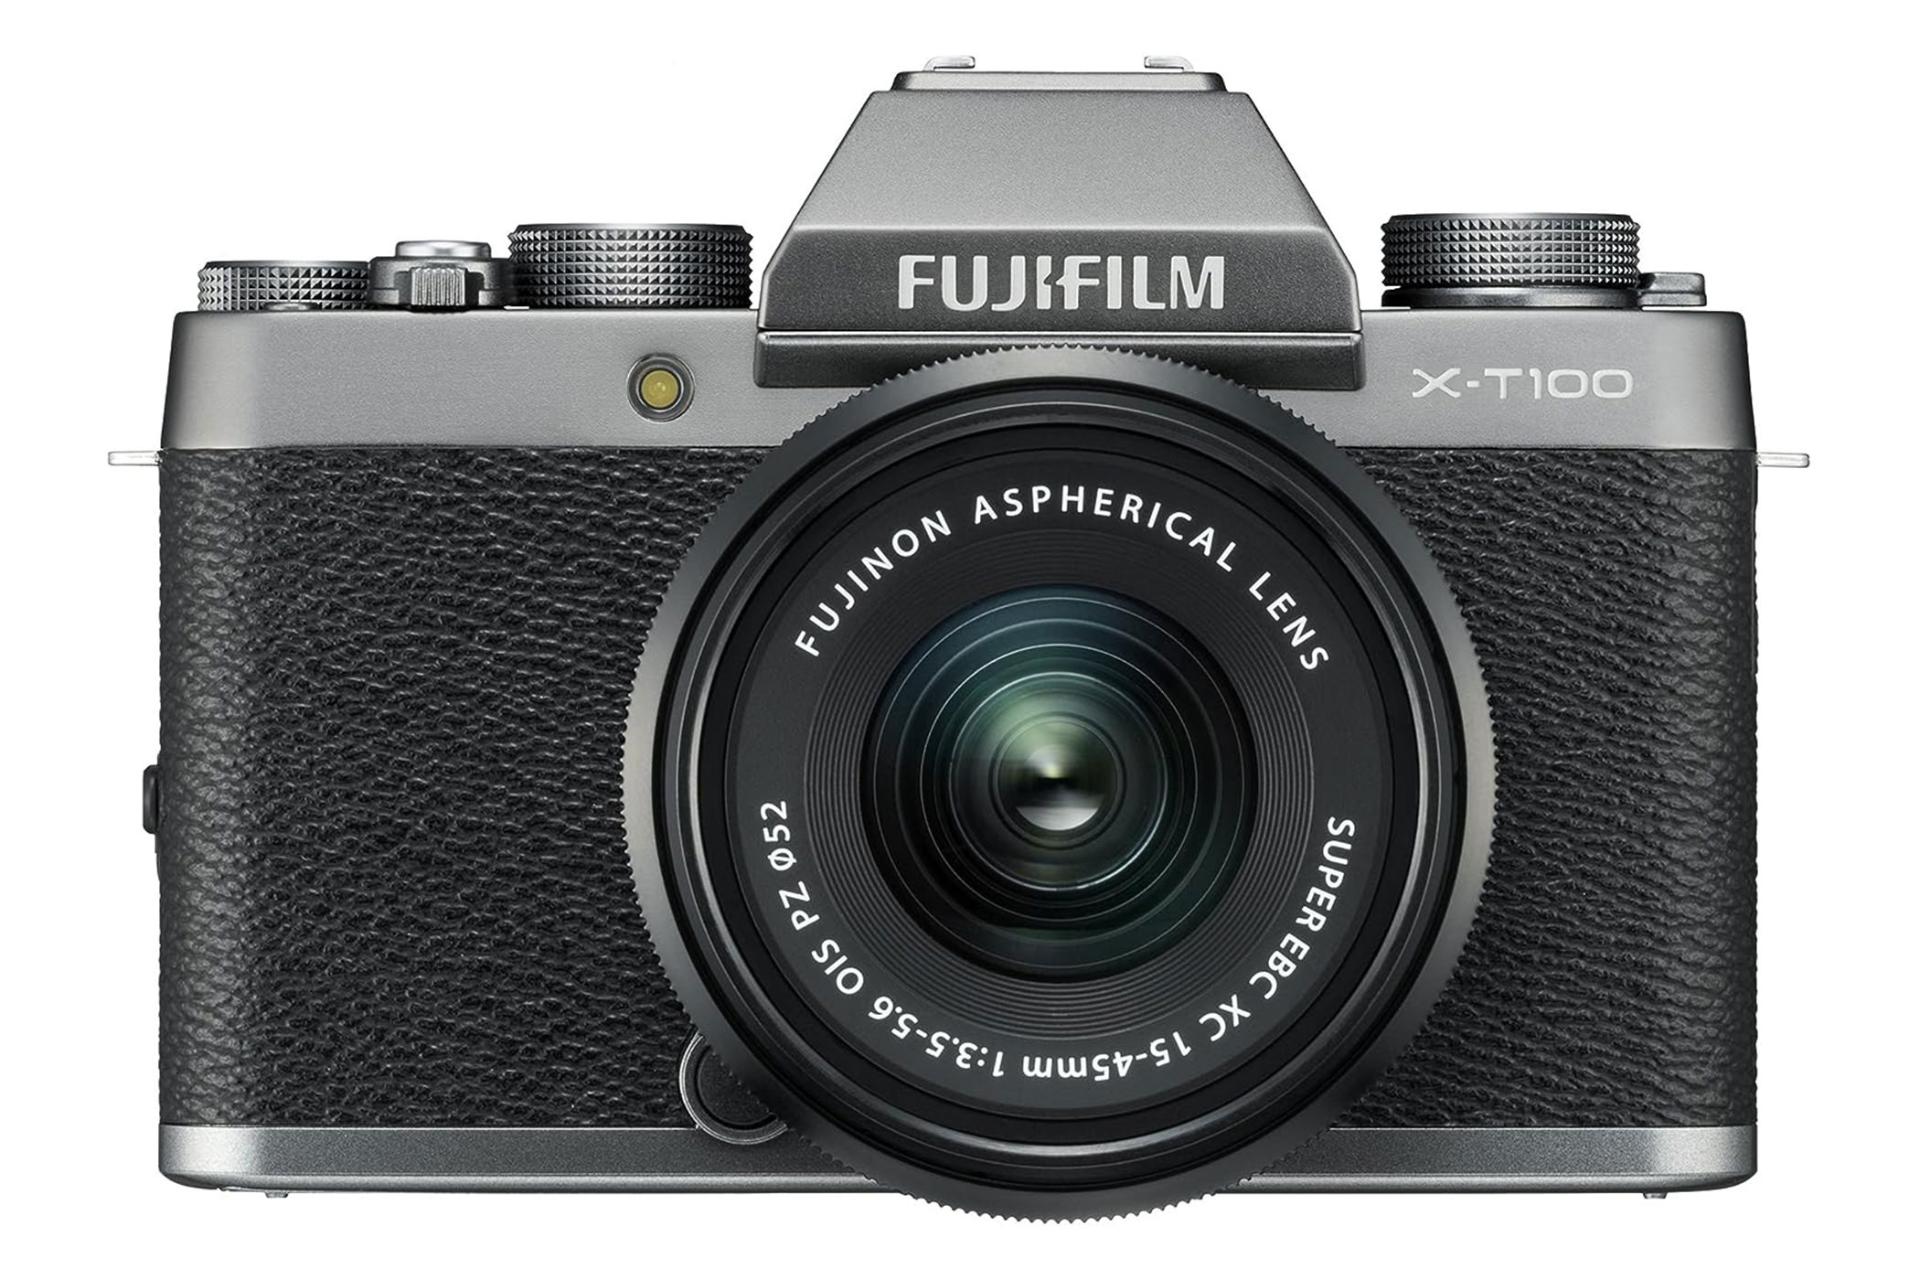 مرجع متخصصين ايران دوربين فوجي فيلم Fujifilm XT-100